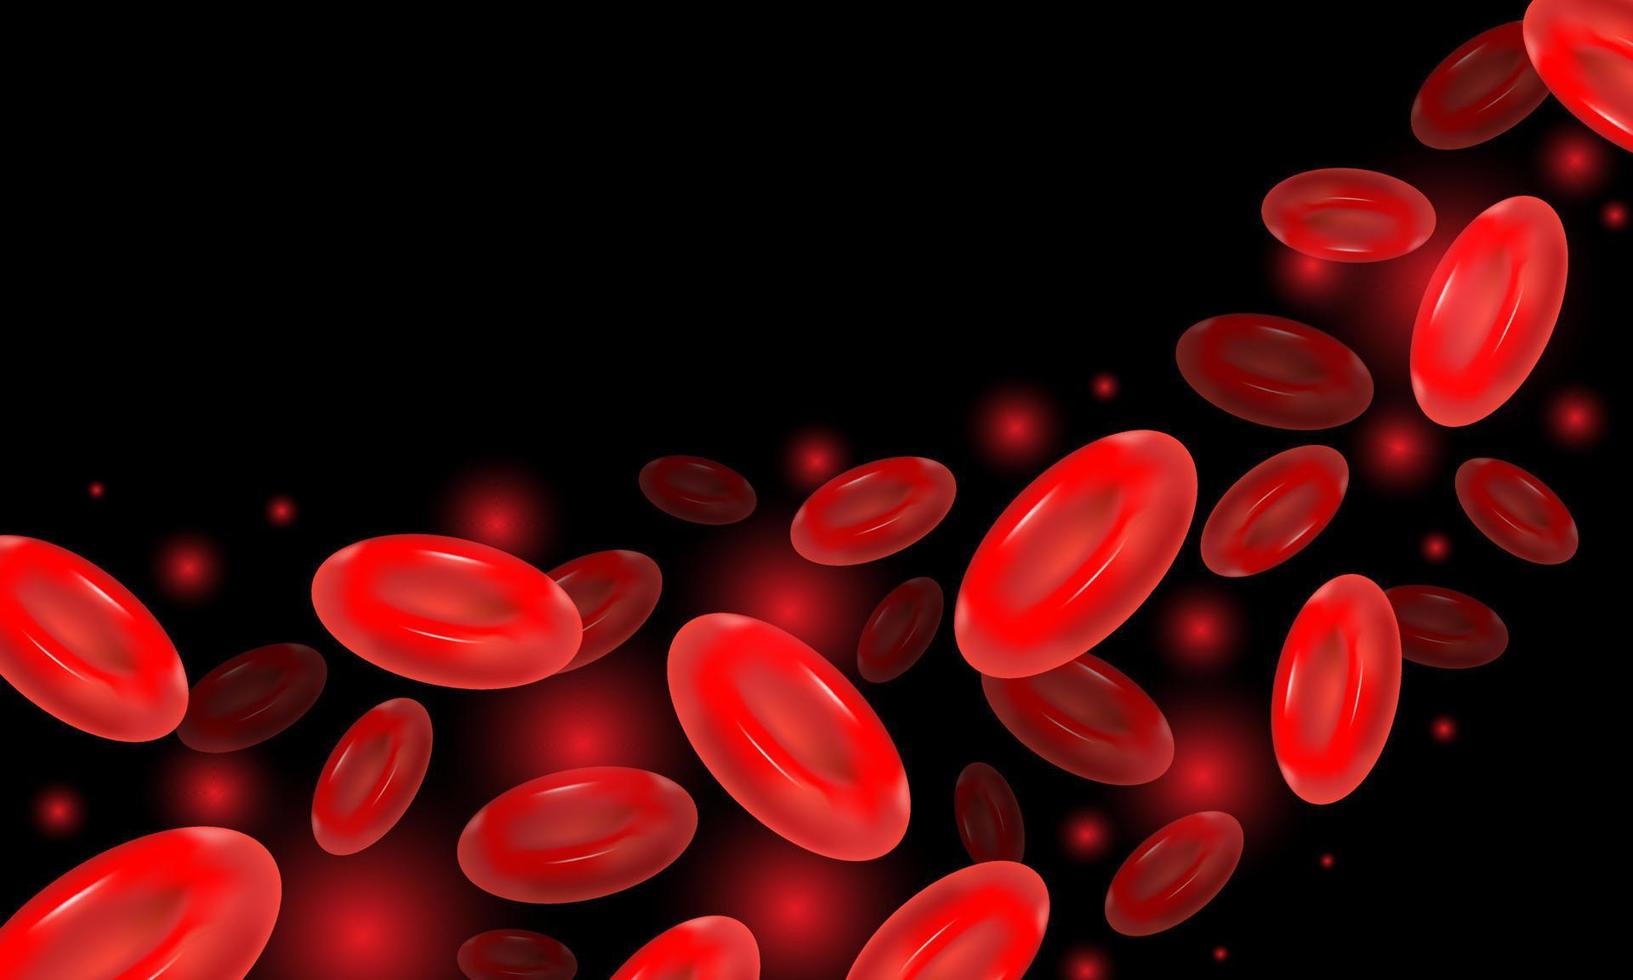 abstrato eritrócitos vermelhos realistas. dia mundial da hemofilia. banner com ilustração de estoque cópia space.vector. vetor